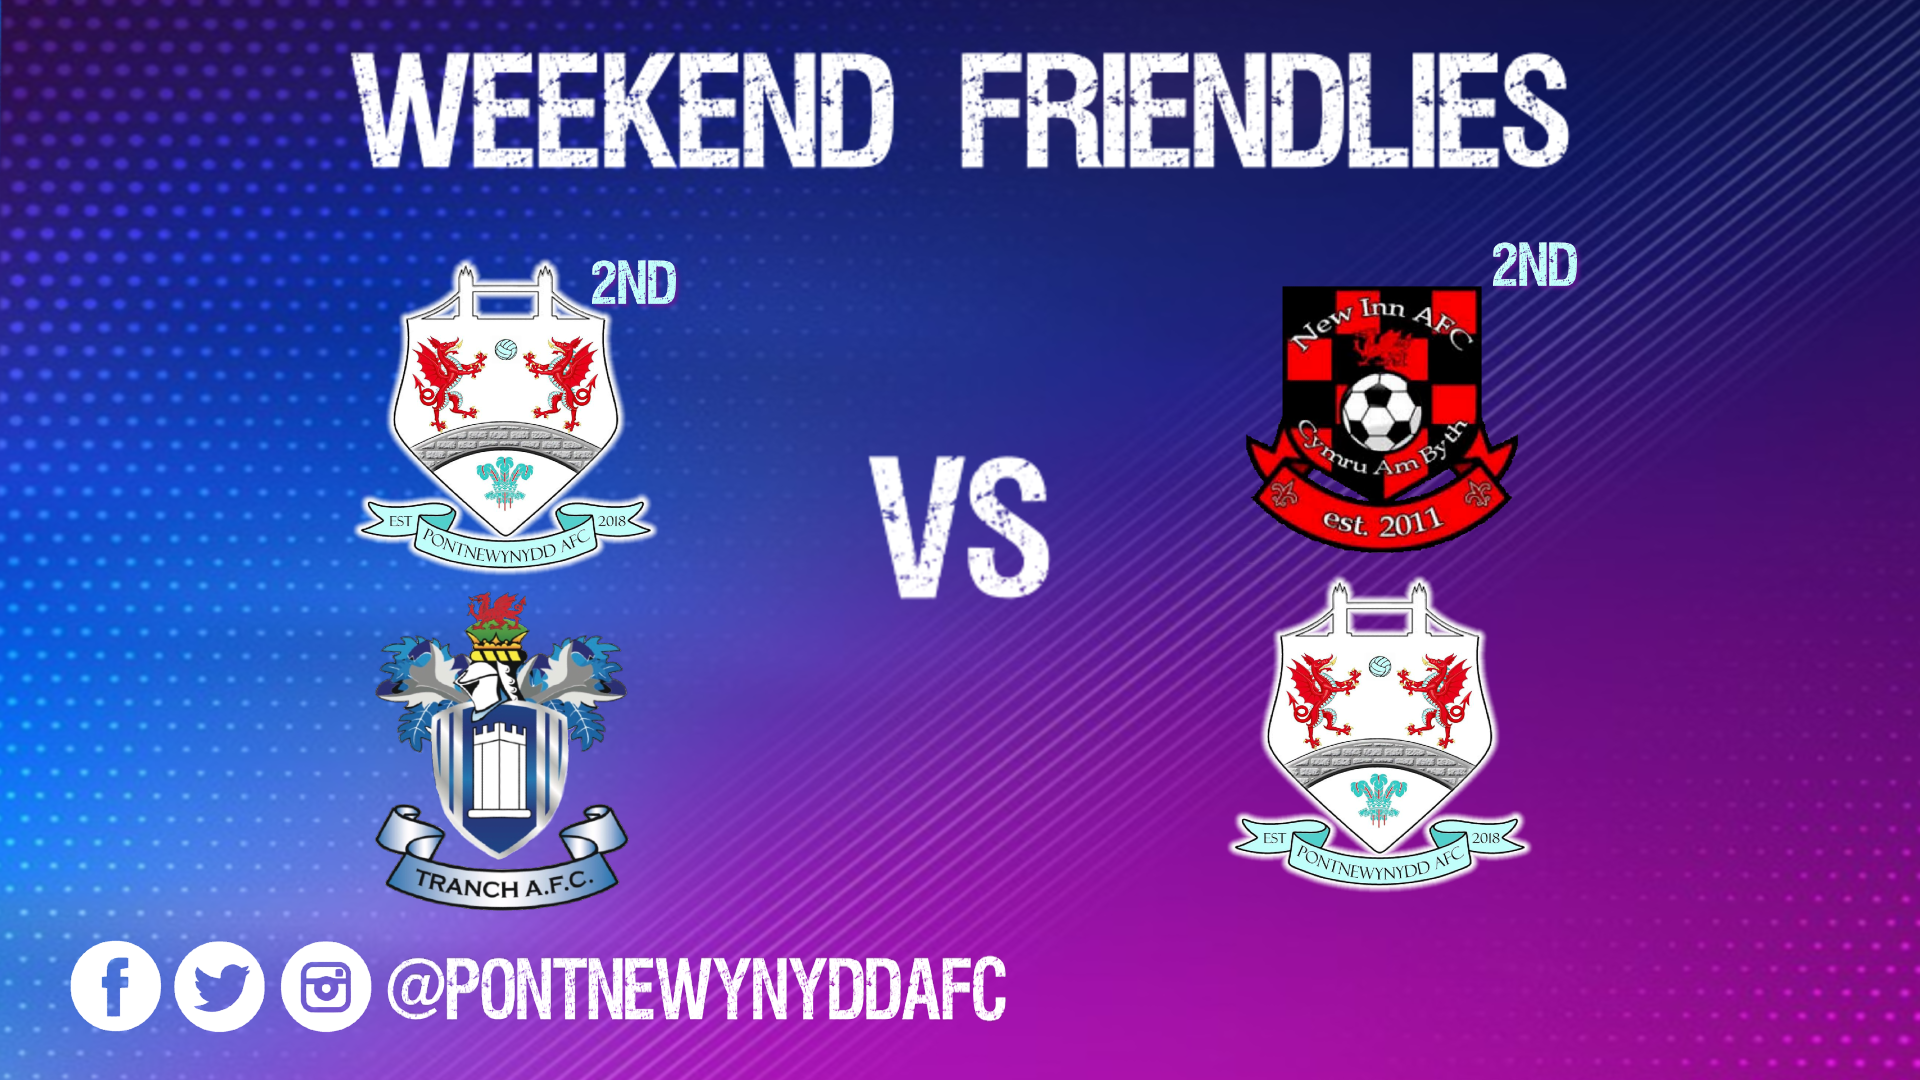 Pontnewynydd-afc-fixtures-june-5th-2021